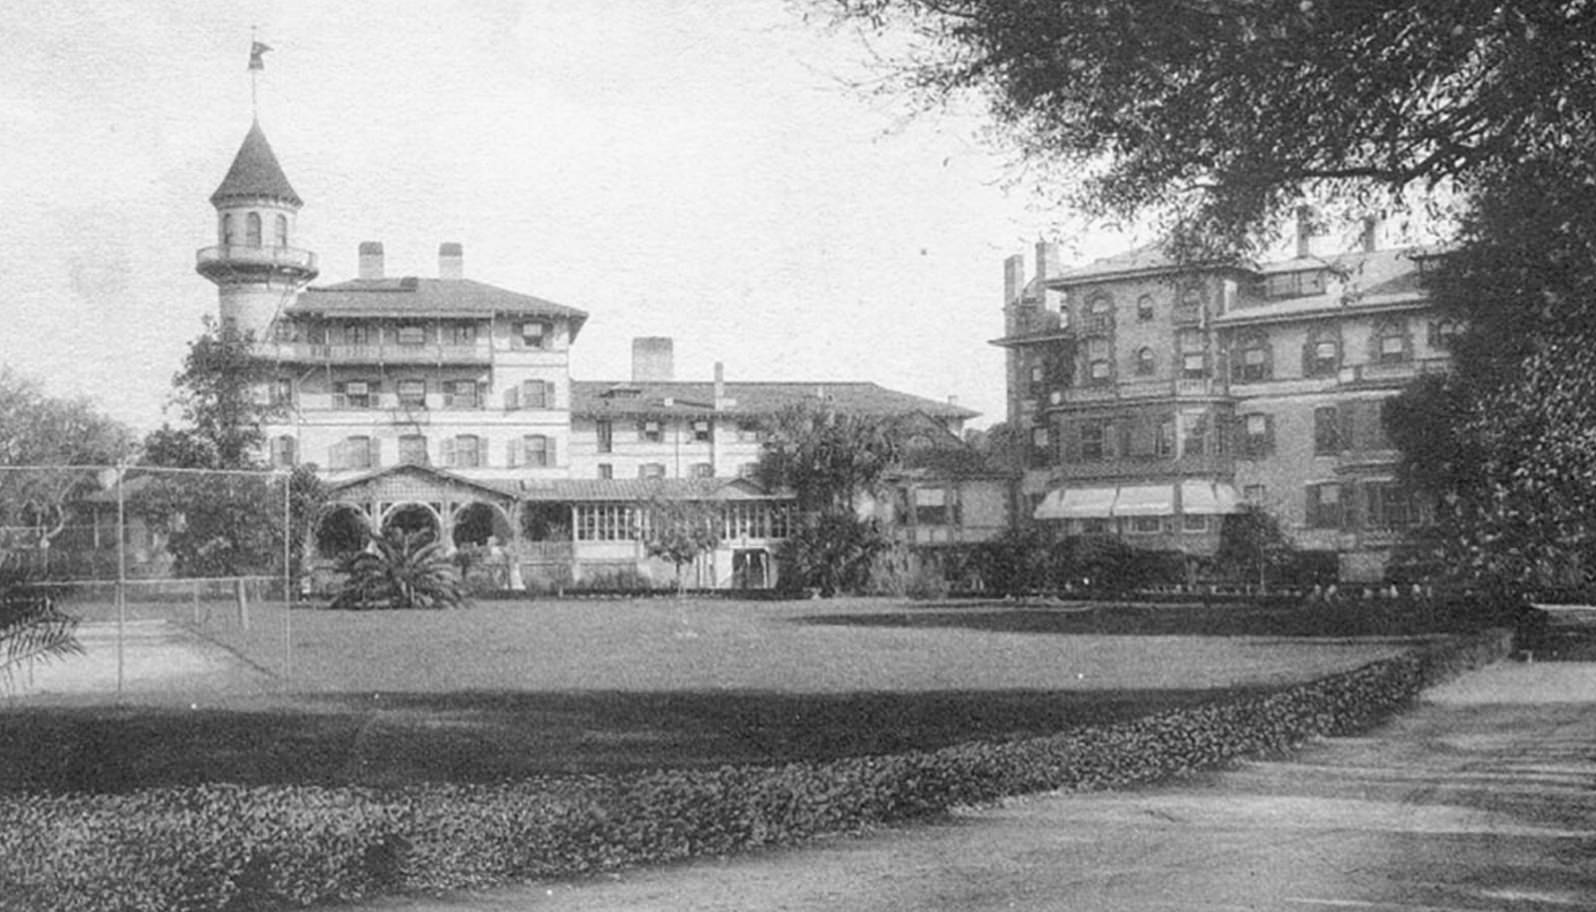 Jekyll Island Club circa 1901